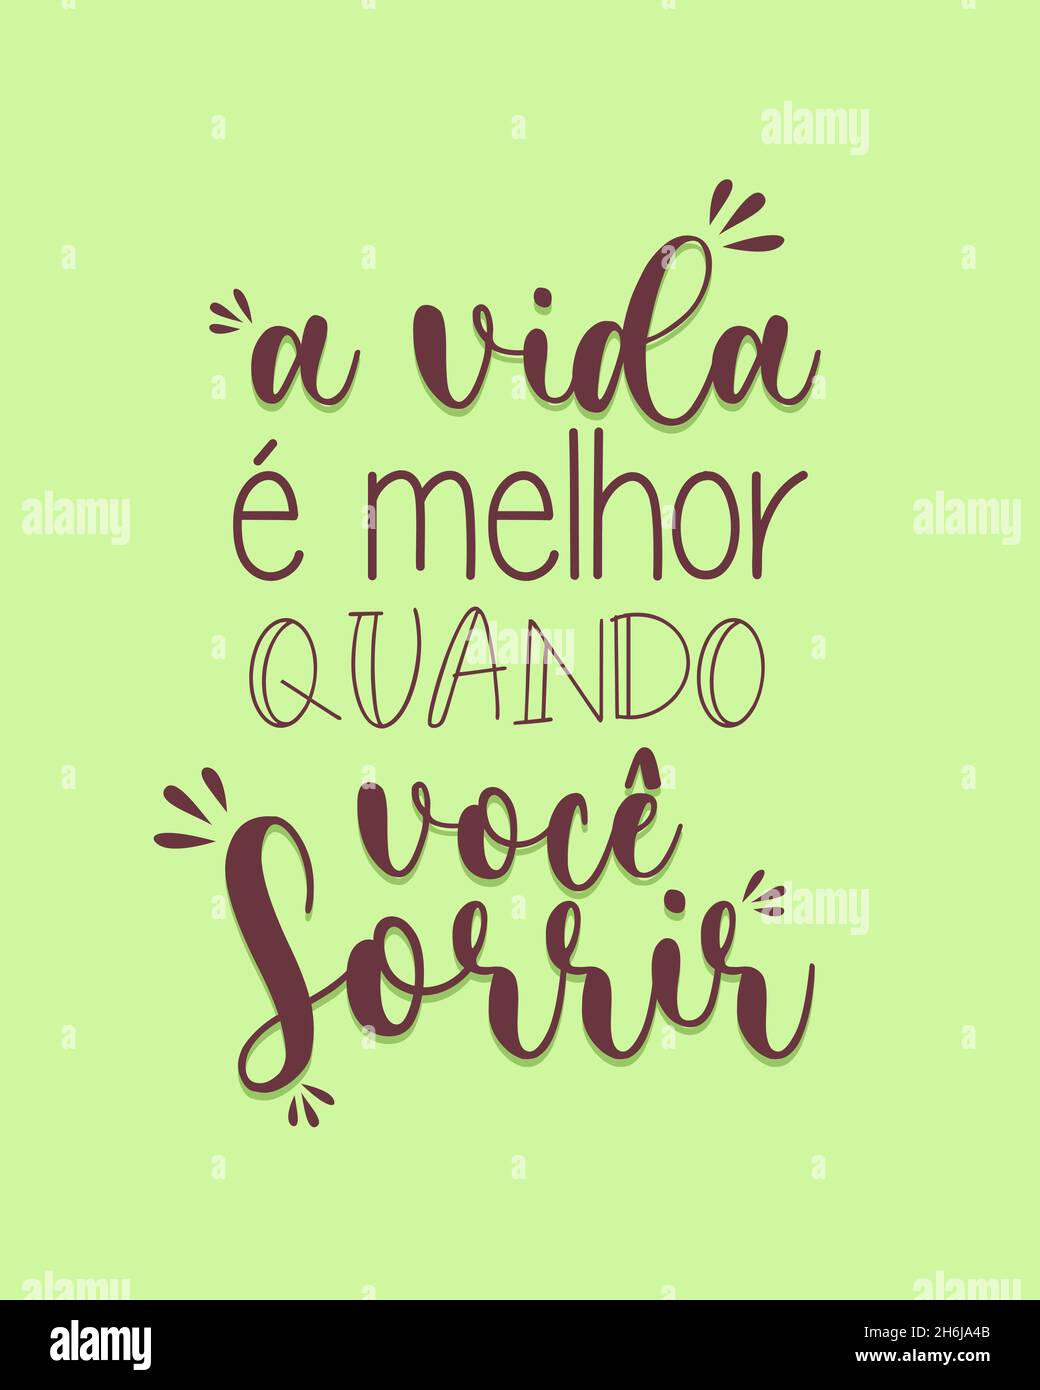 Lettrage portugais.Traduction du portugais - la vie est meilleure quand vous souriez Illustration de Vecteur